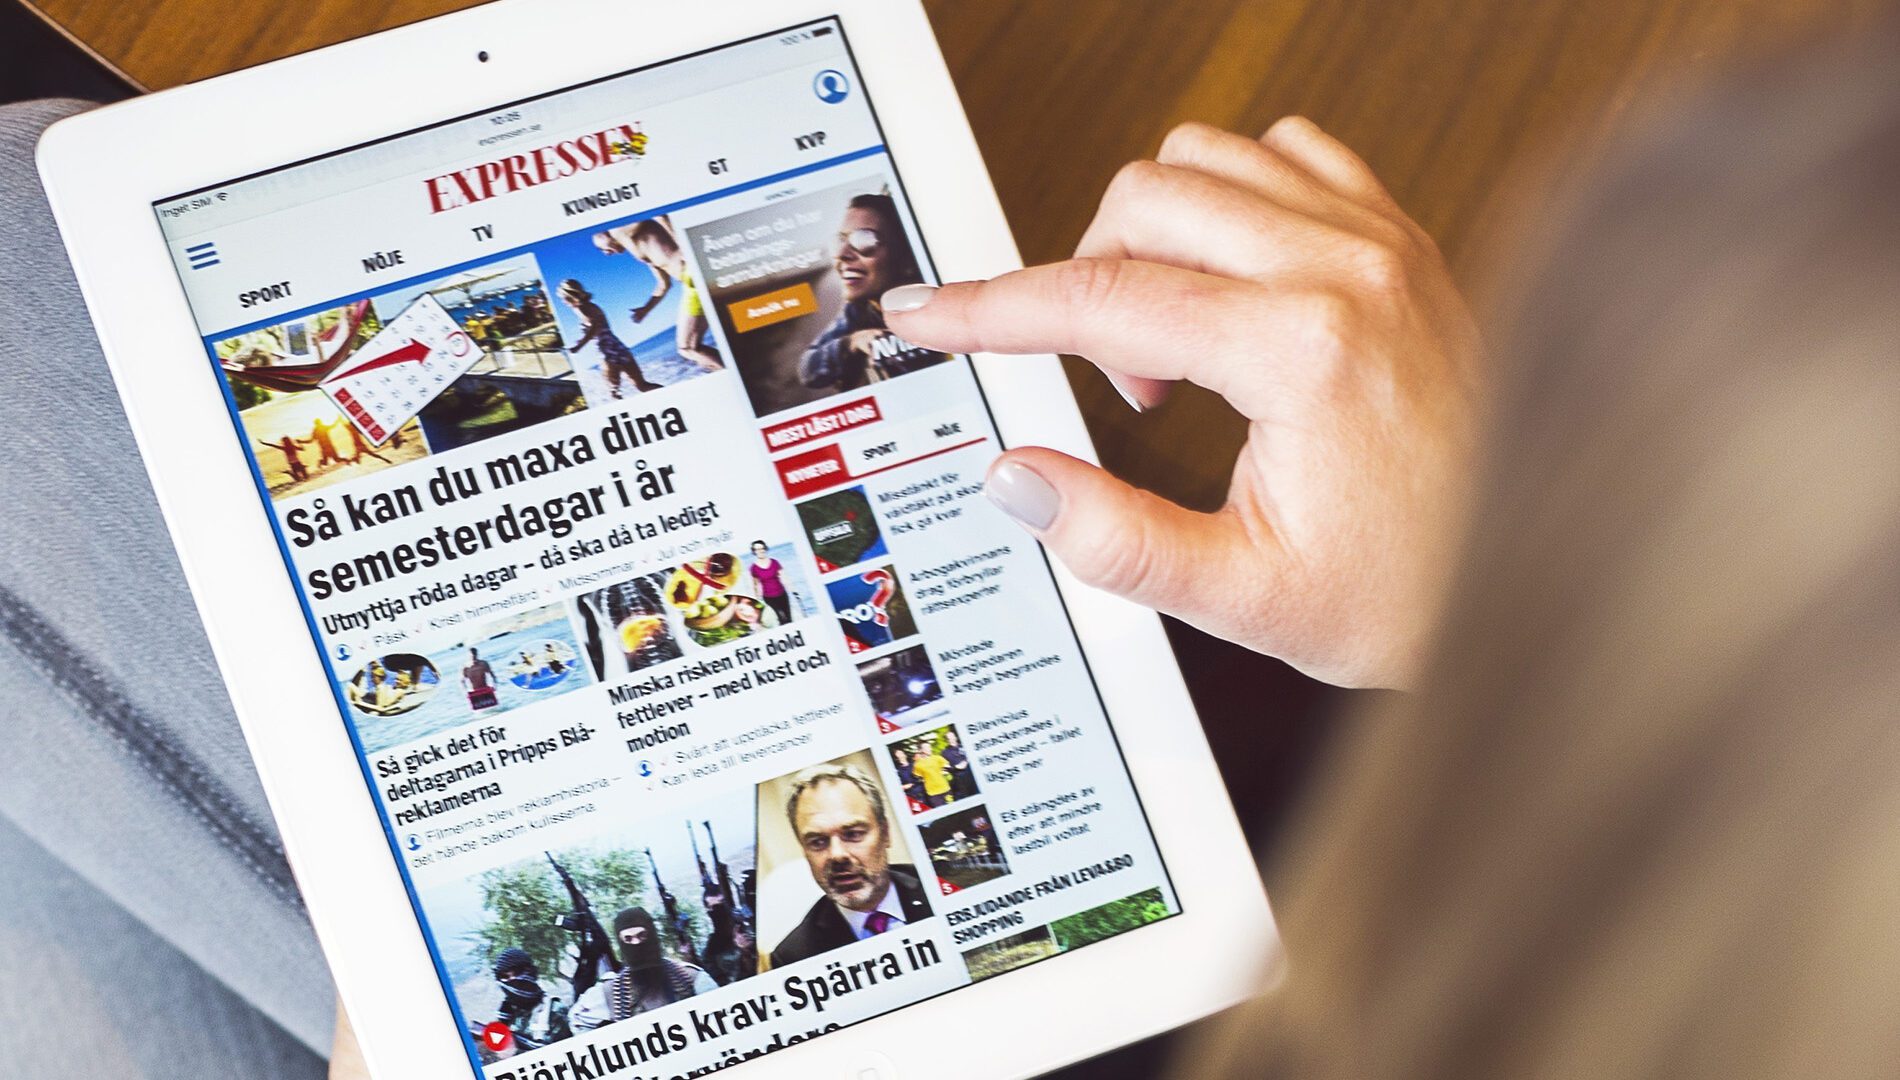 Moderna redaktionella verktyg banar väg för nya arbetssätt på Expressen - - Avega Group AB